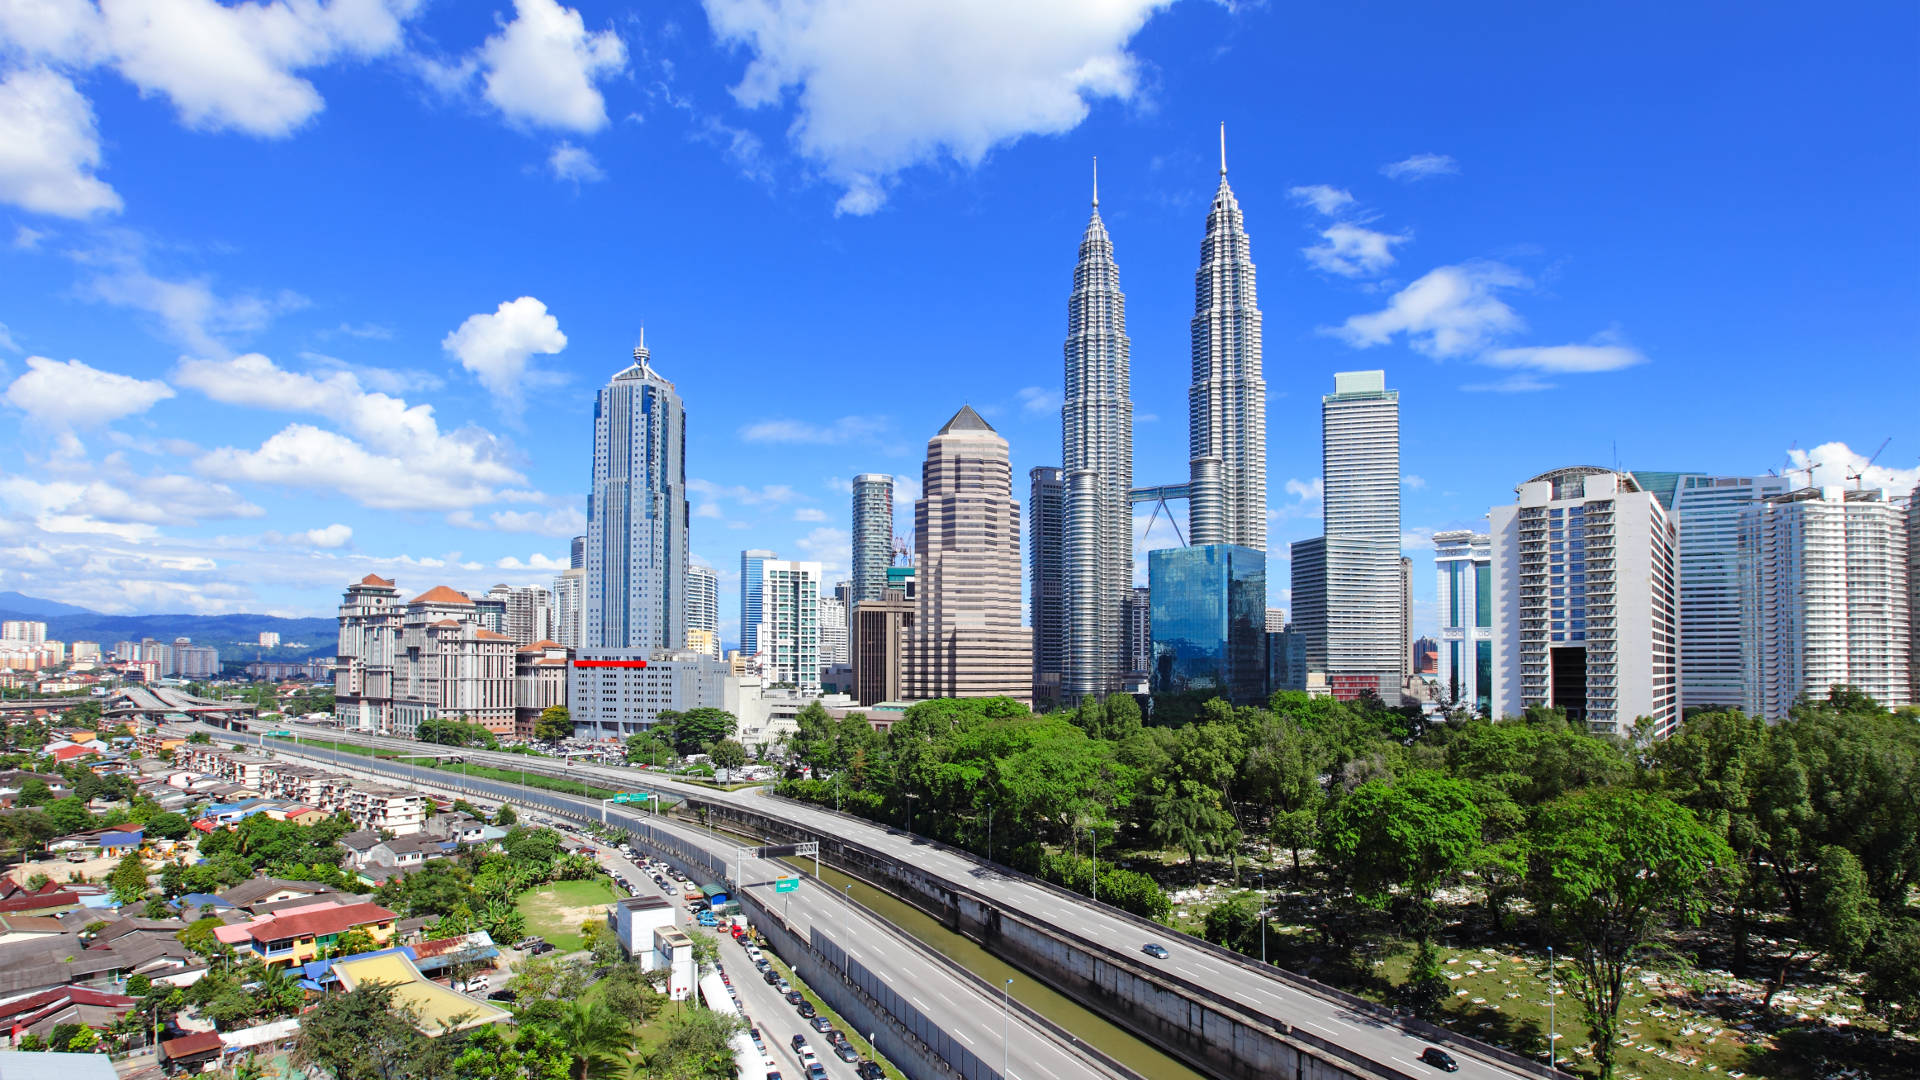 SINGAPORE – MALAYSIA - INDONESIA